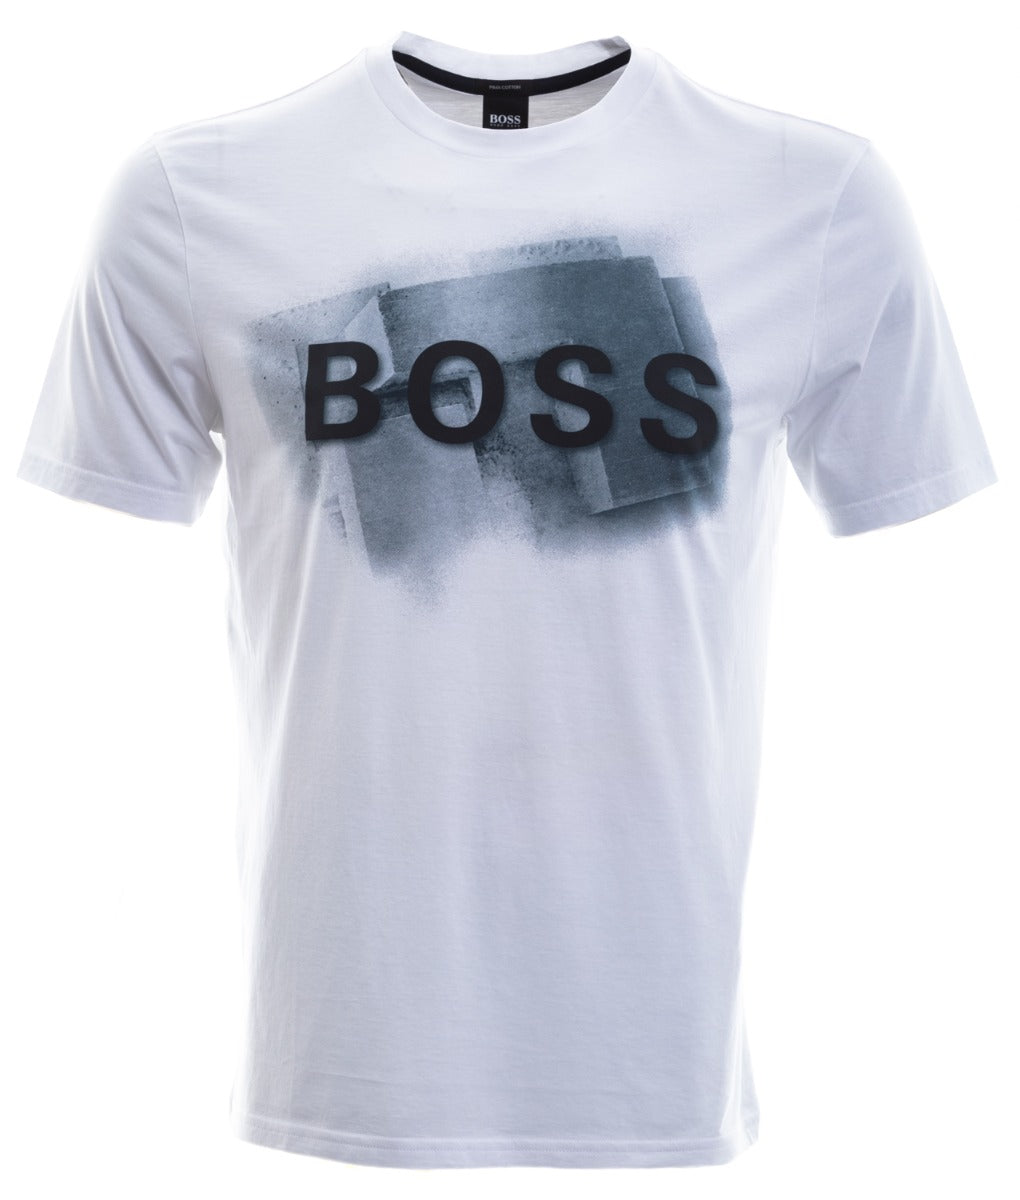 BOSS Tlogo T-Shirt in White